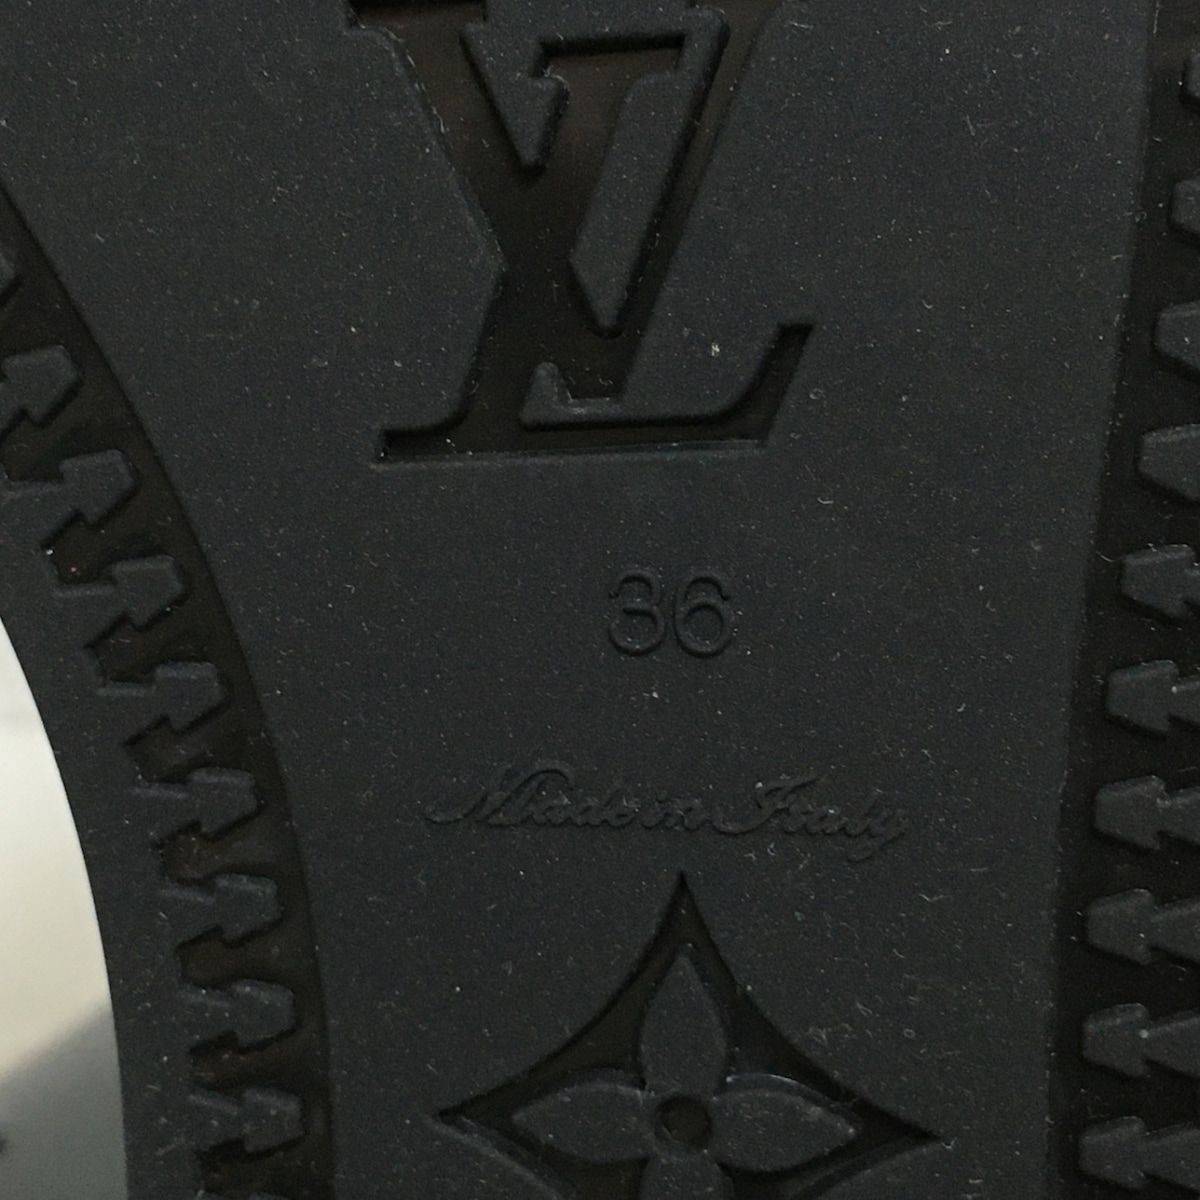 LOUIS VUITTON(ルイヴィトン) レインブーツ 36 レディース - 黒 モノグラム/型押し加工 ラバー